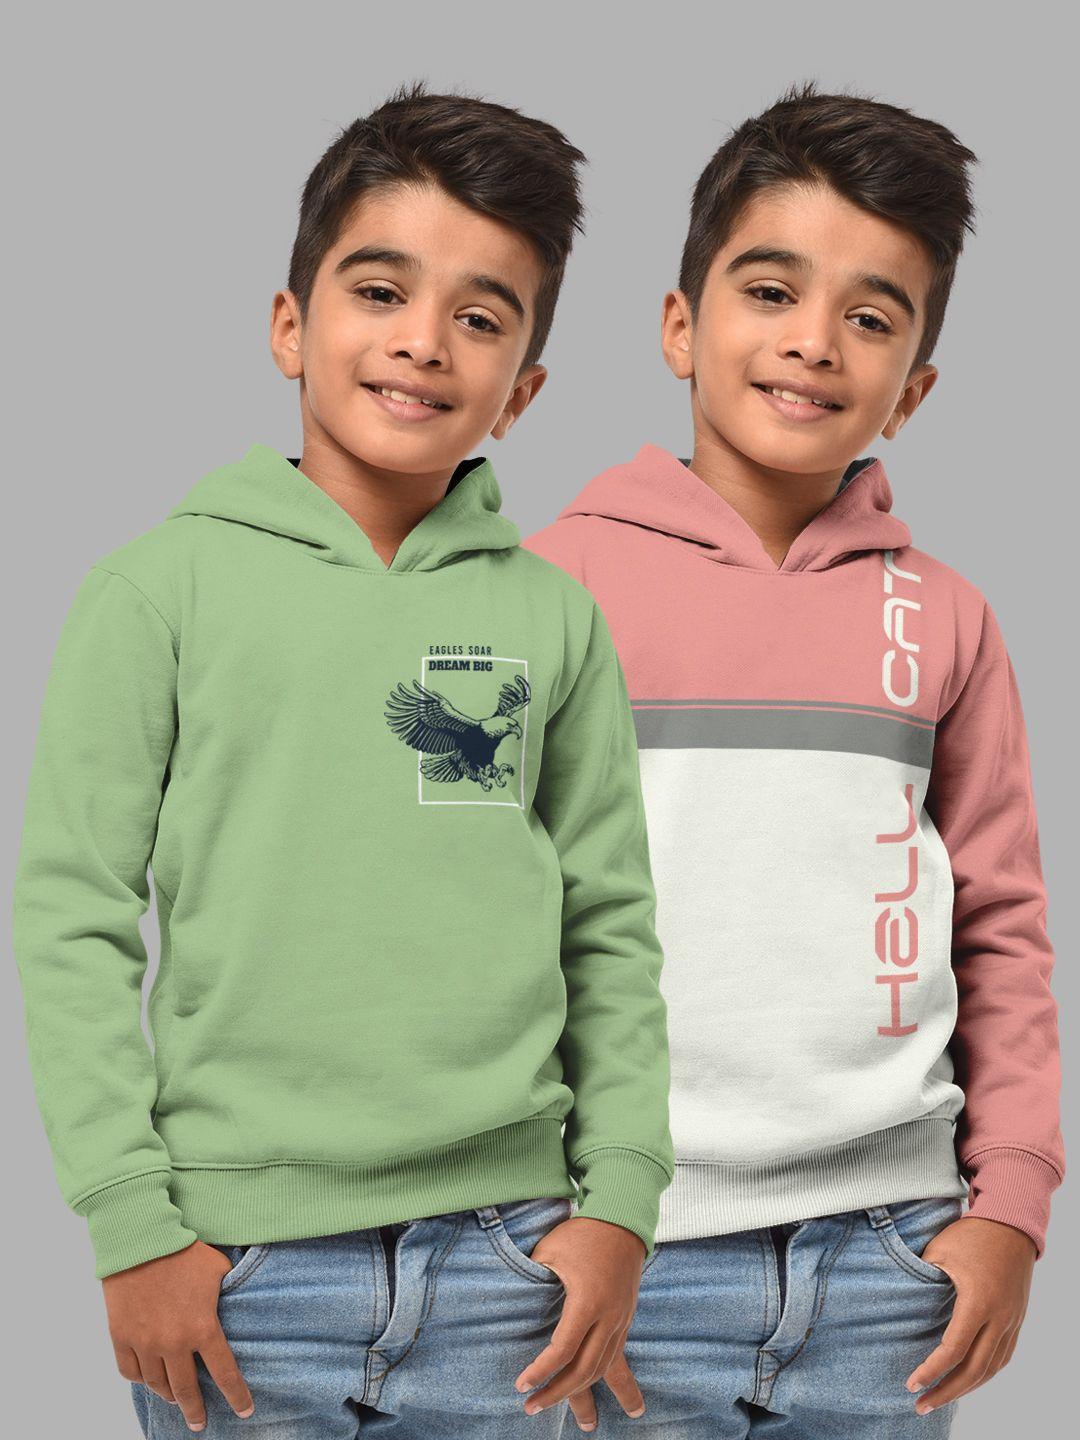 hellcat boys set of 2 green & pink printed hooded sweatshirt